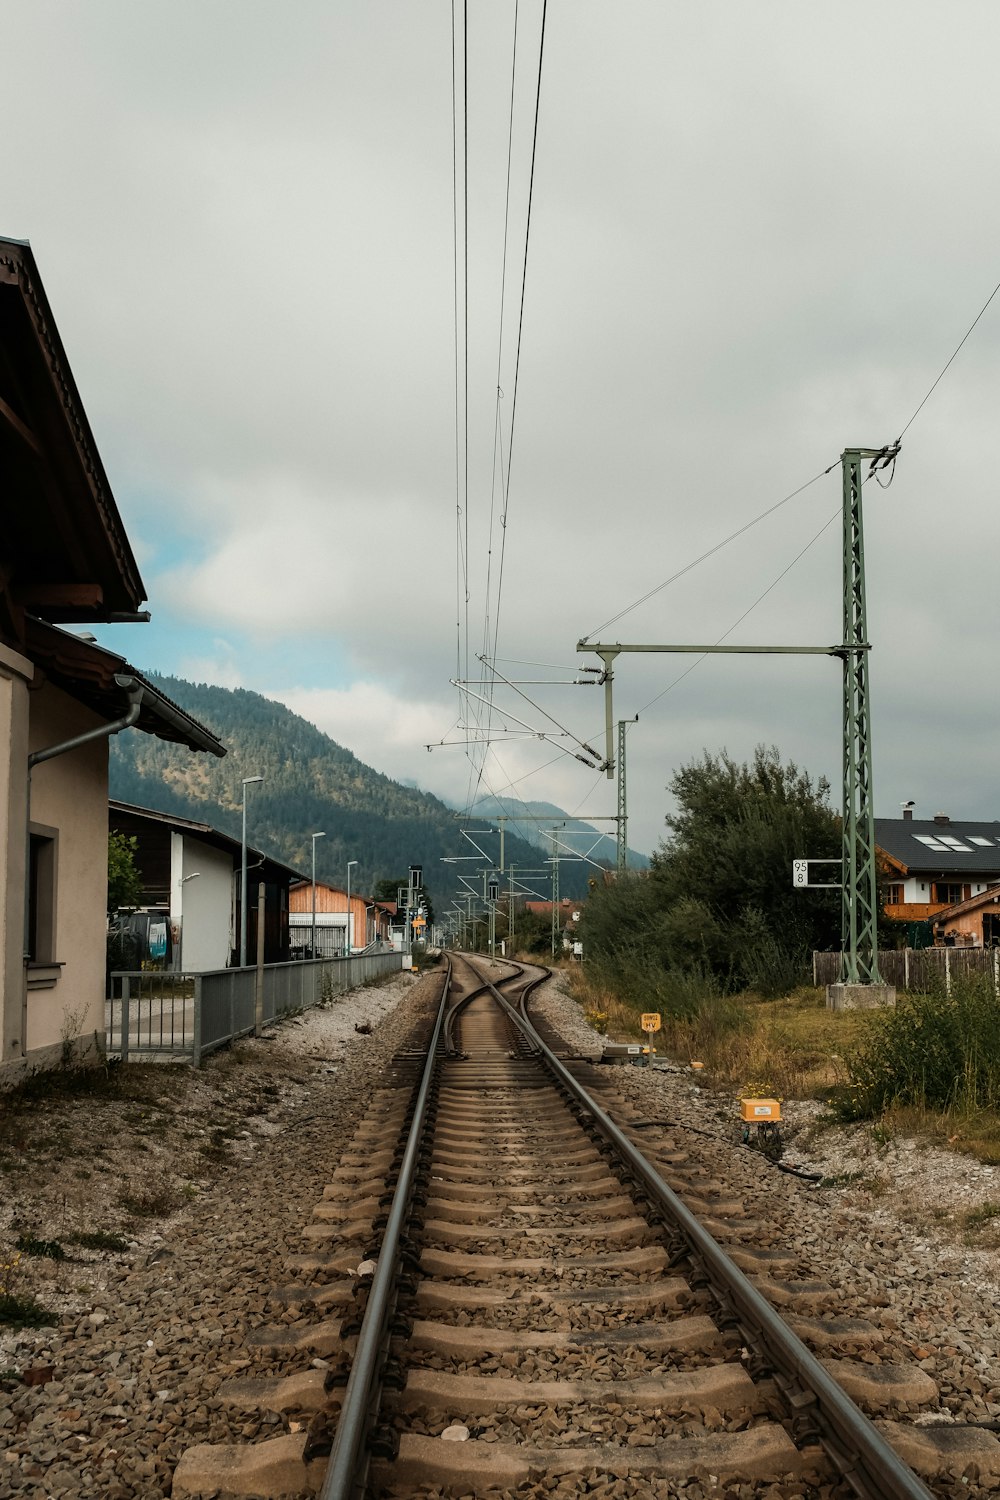 a train track running through a rural area